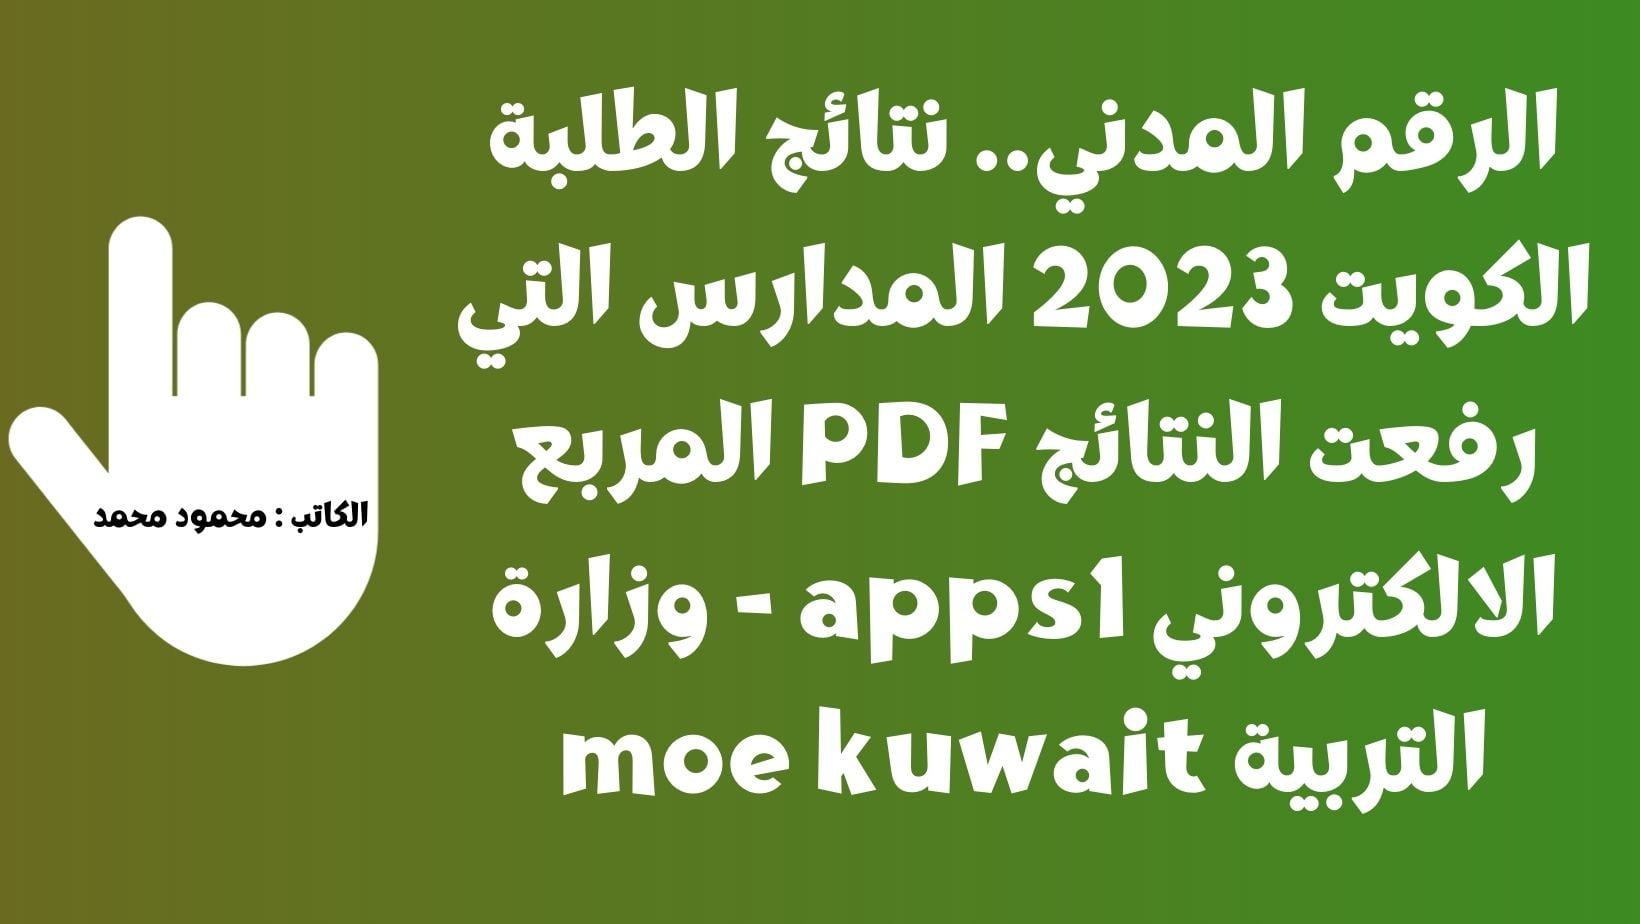 نتائج الطلبة الكويت 2023 المدارس